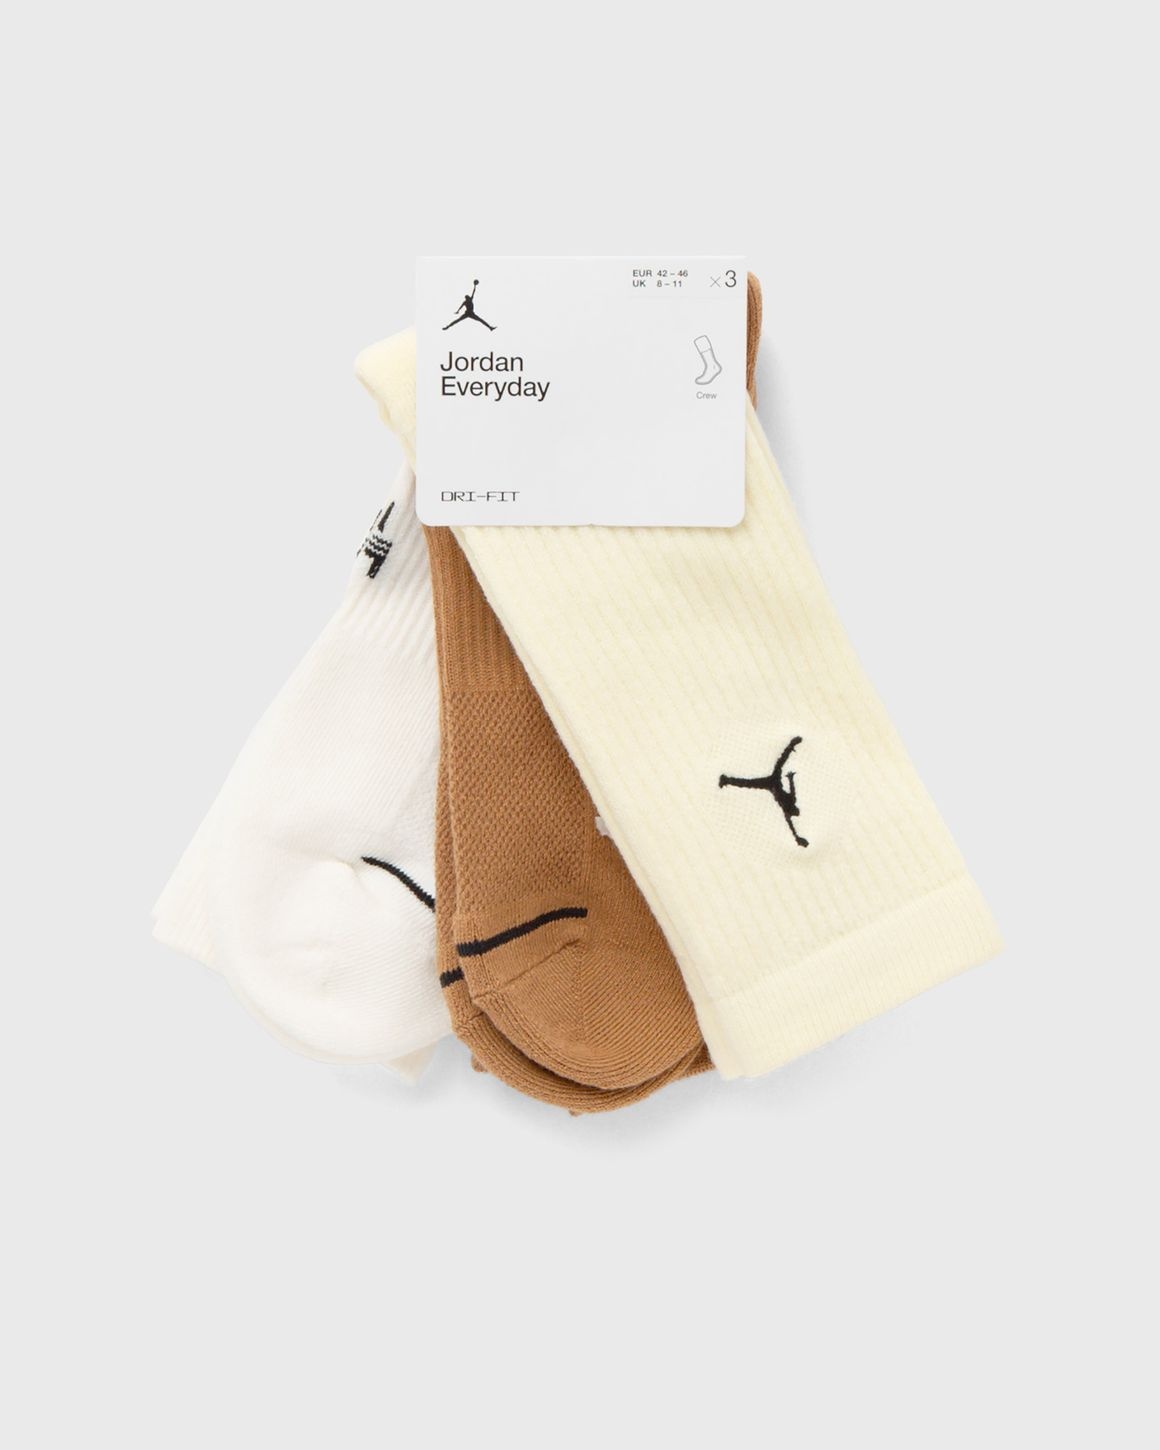 Everyday Crew Socks (3 pairs) - 1